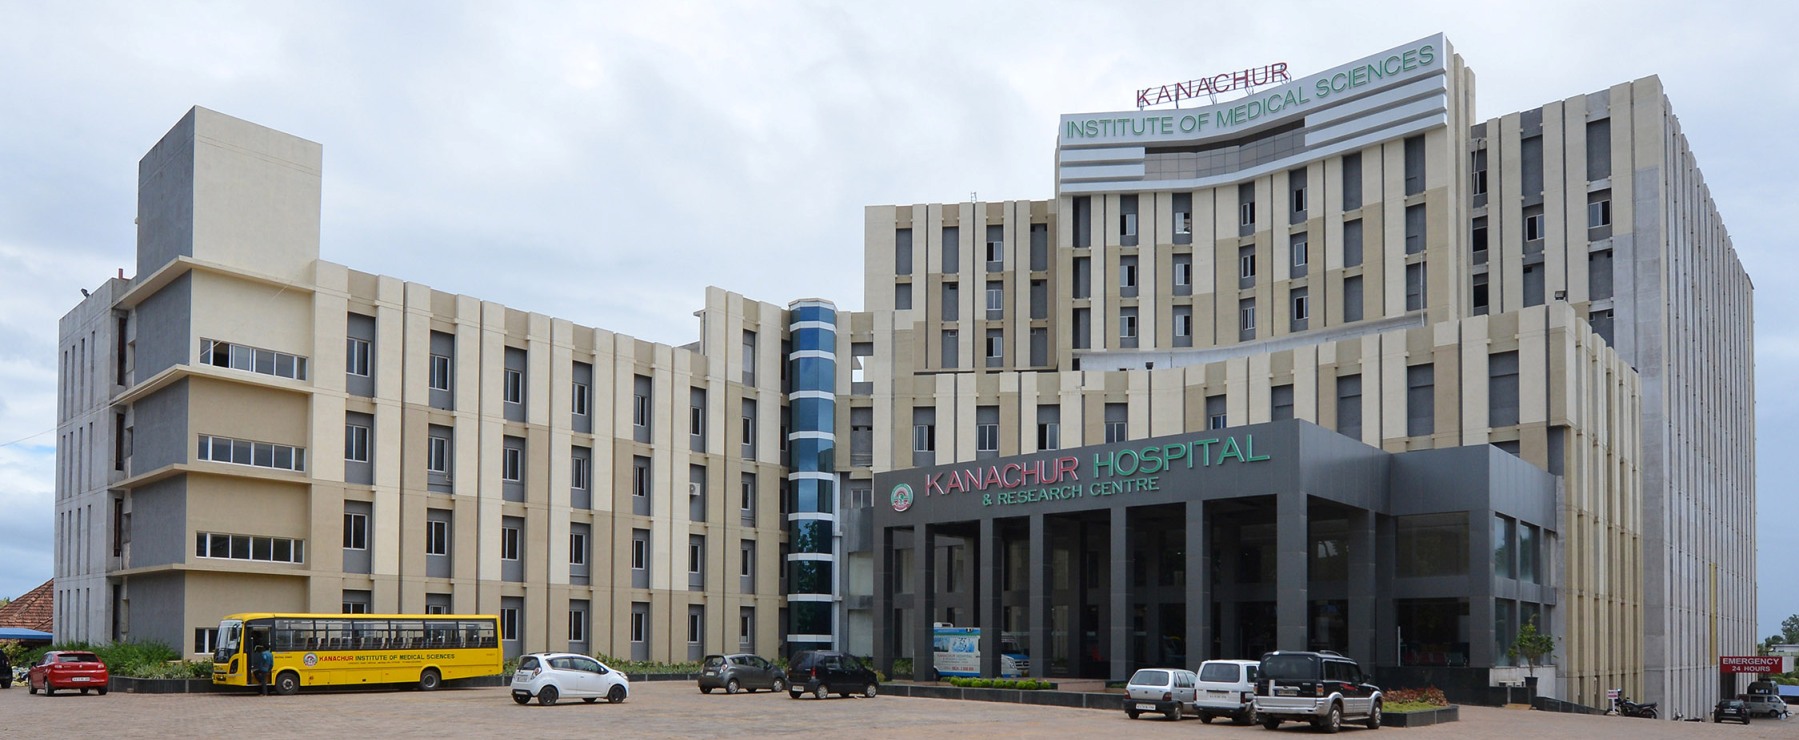 Kanachur Institute of Medical Science 